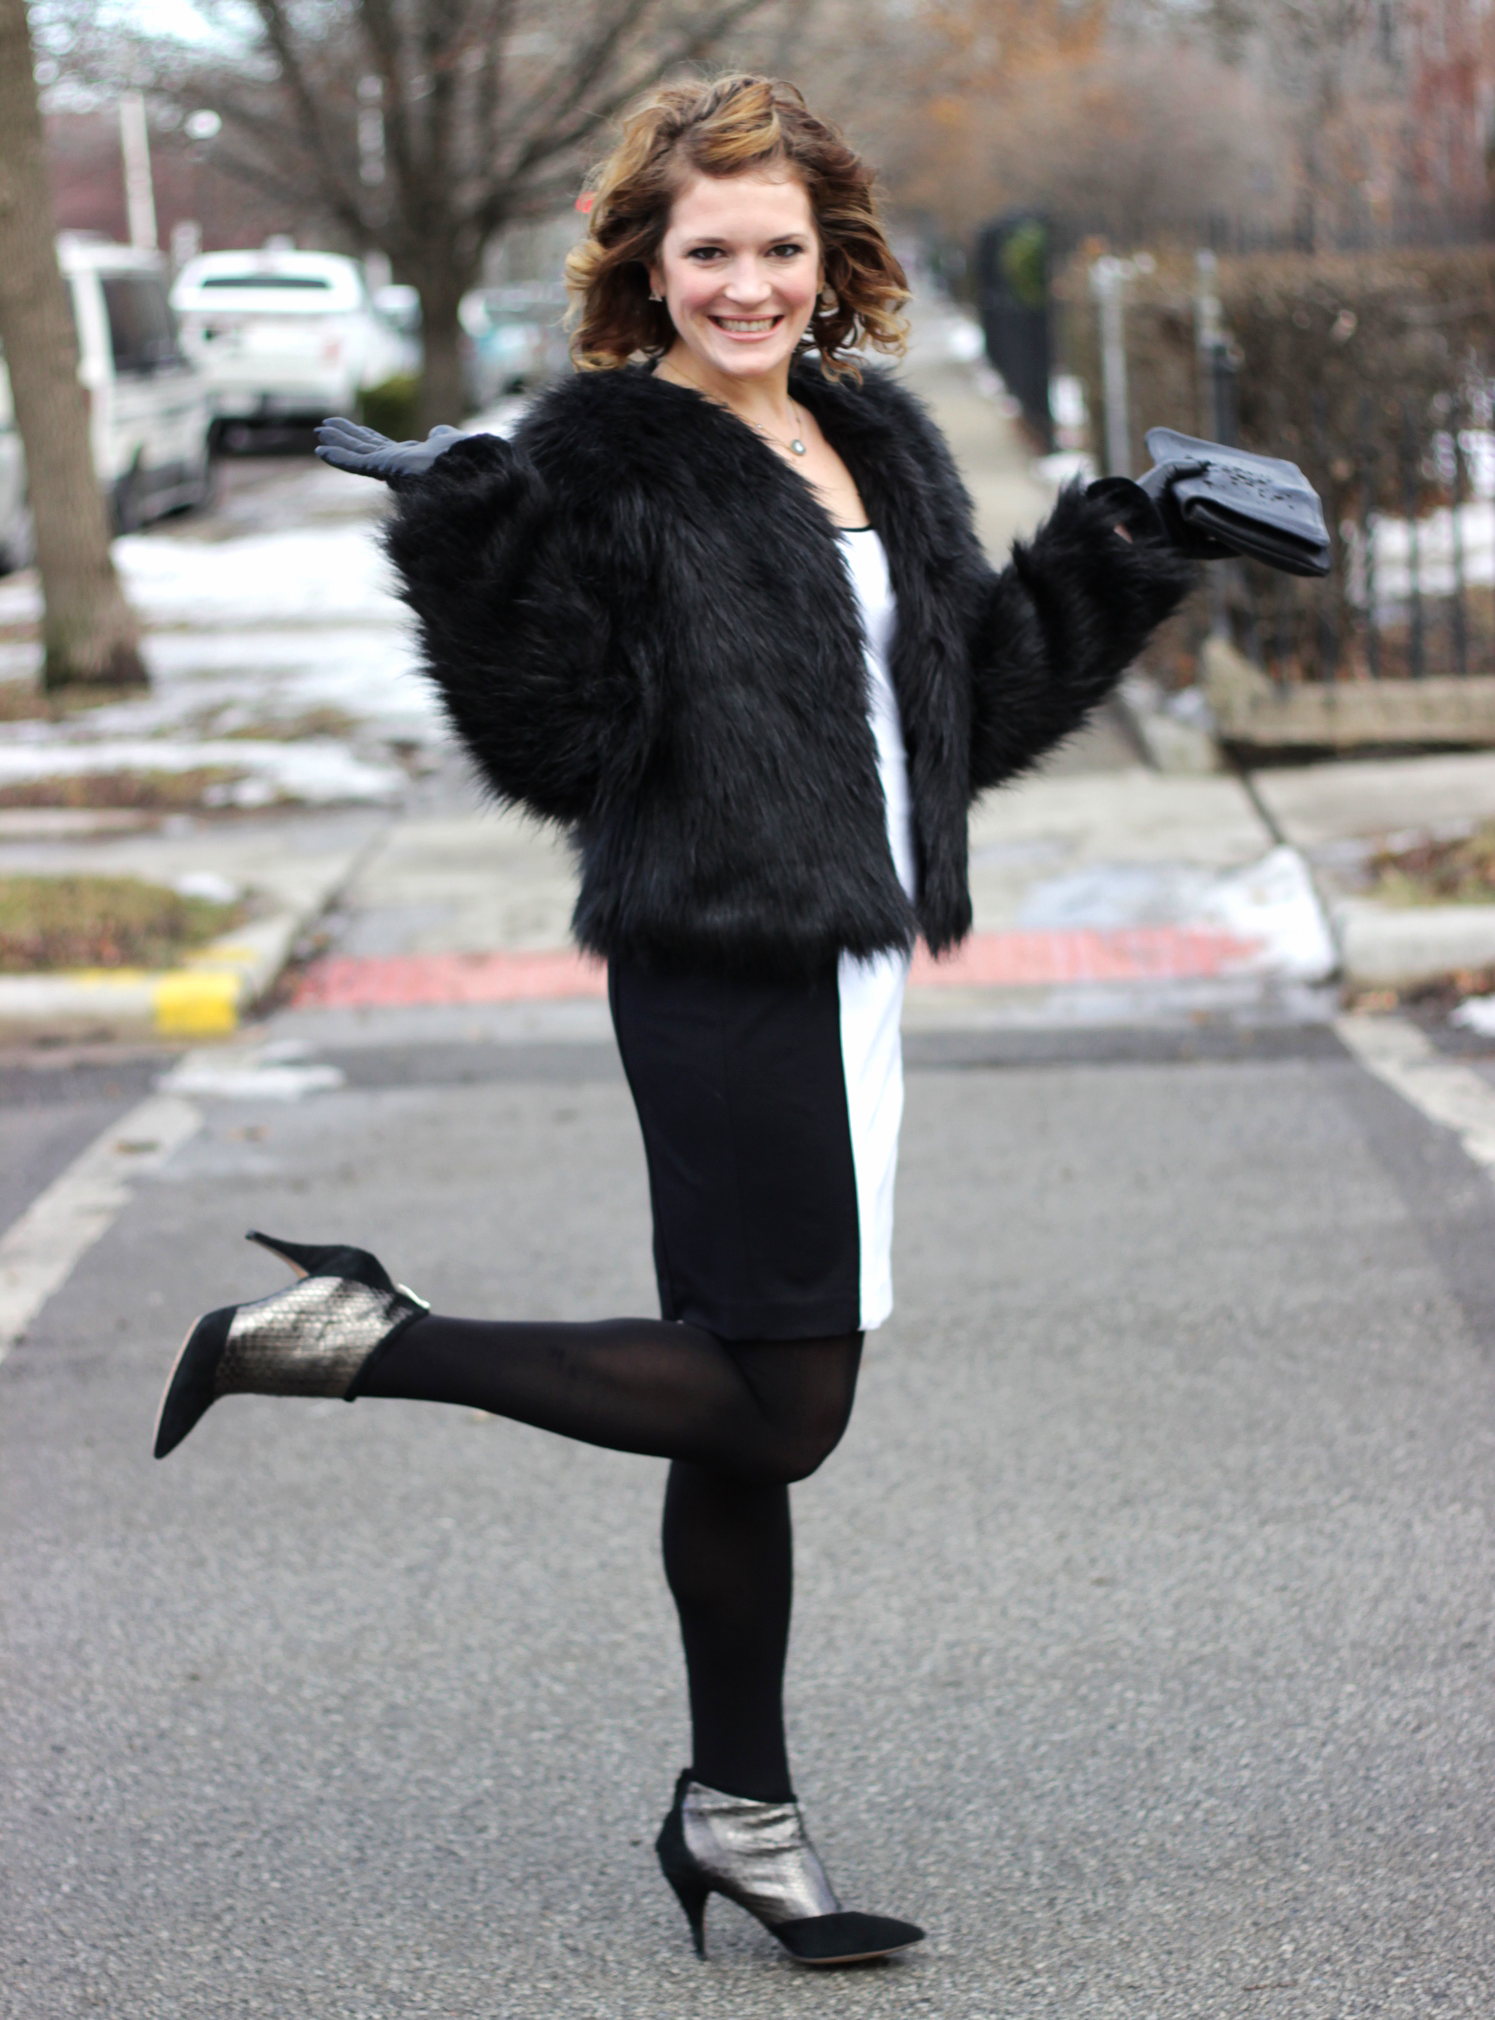 winter dress up ideas - long sleeve dress plus outerwear - belle meets world blog